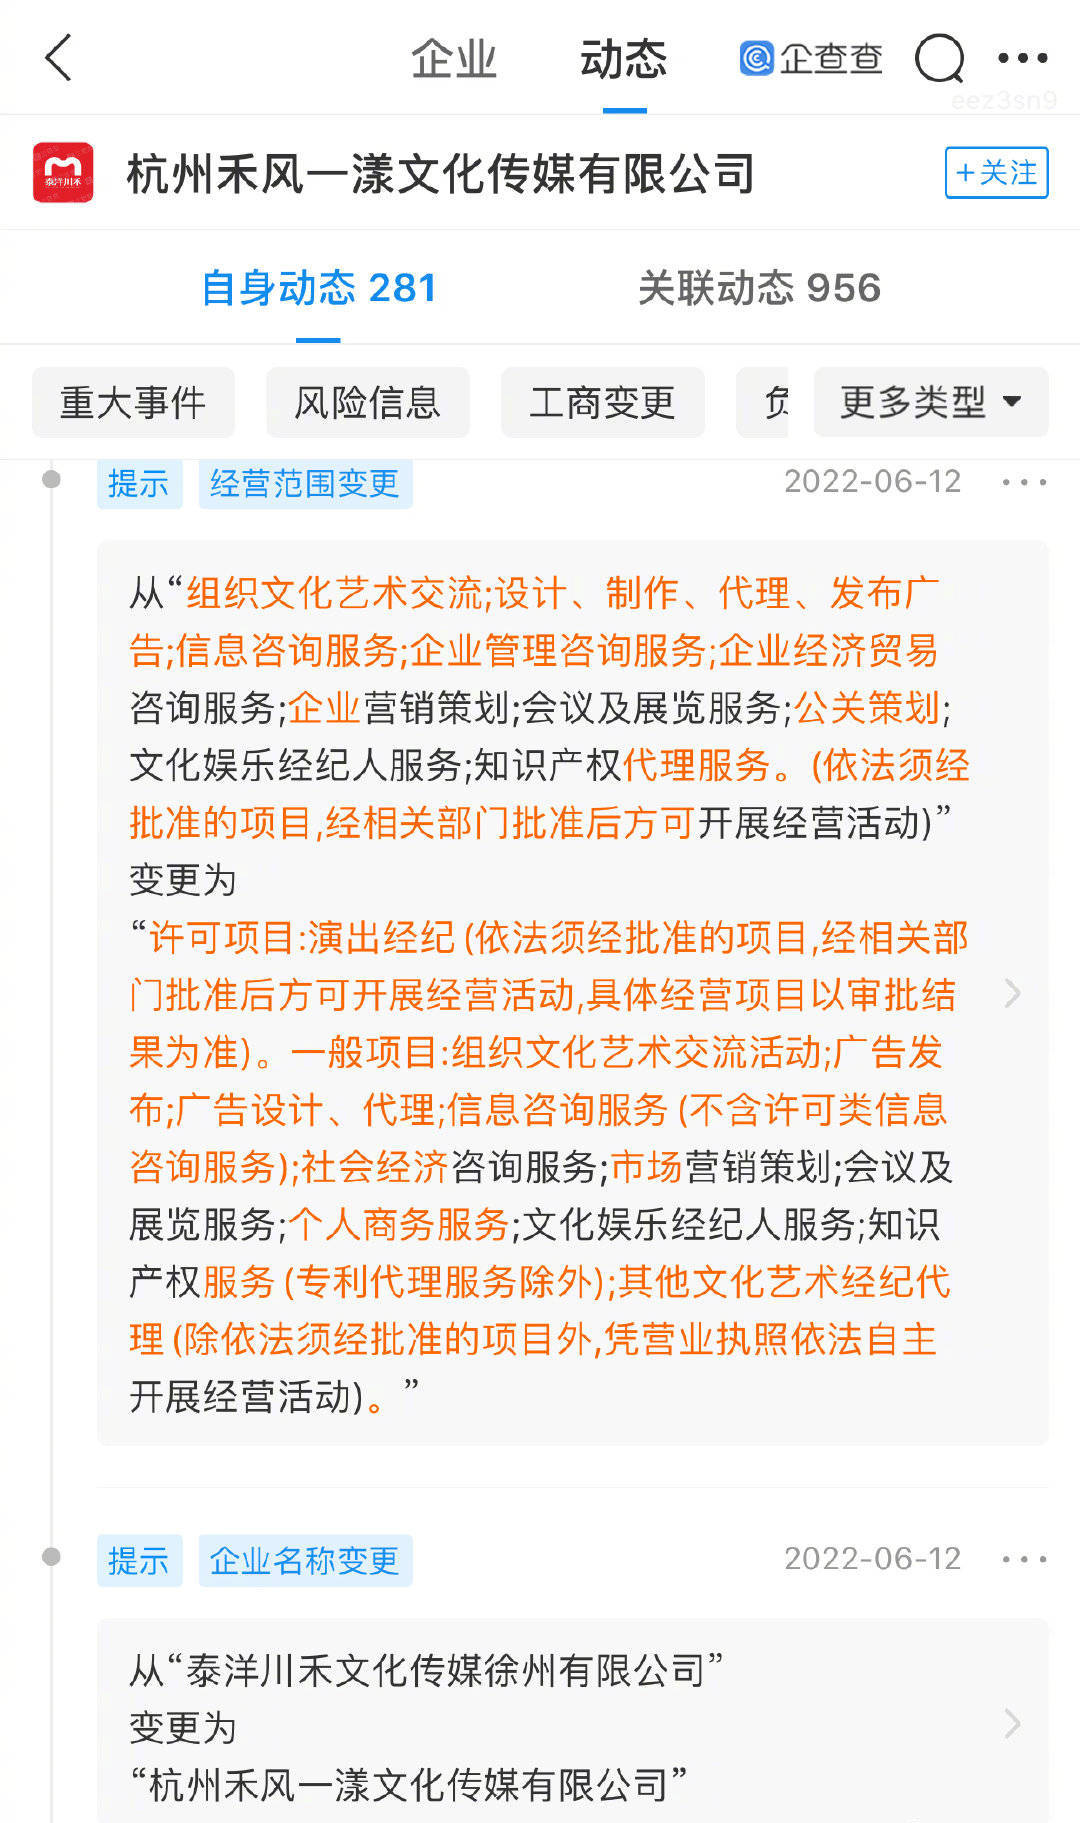 泰洋川禾文化传媒徐州有限公司更名为杭州禾风一漾文化传媒有限公司